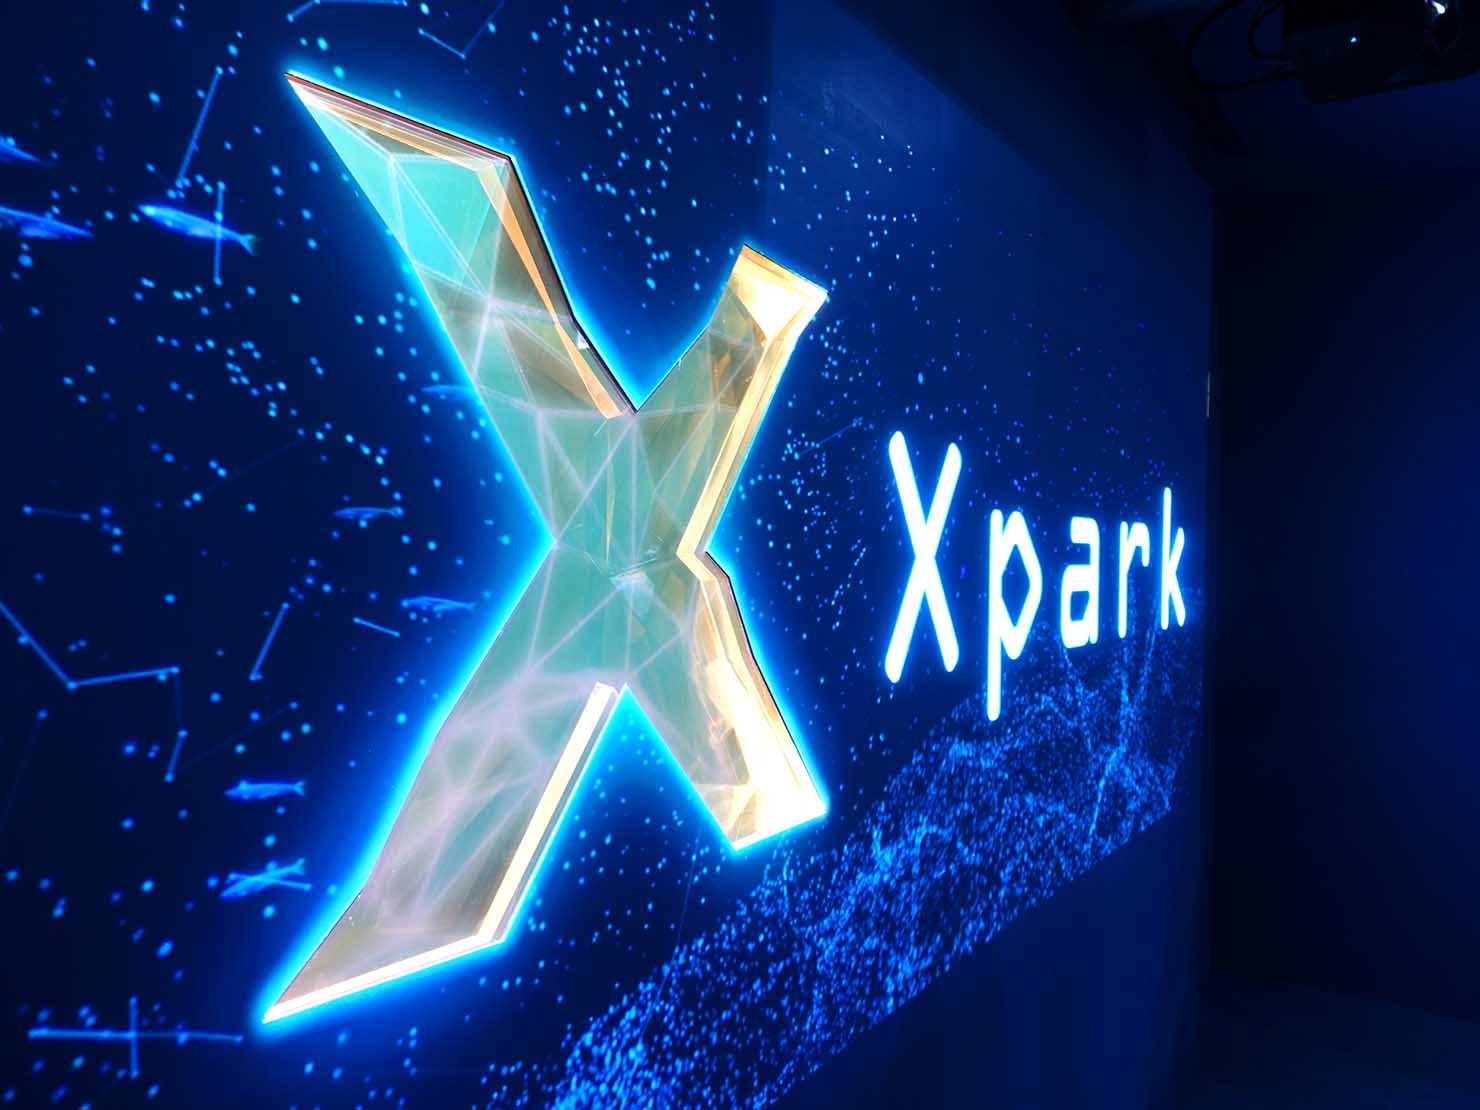 台北に誕生した都市型水族館「Xpark」のロゴ